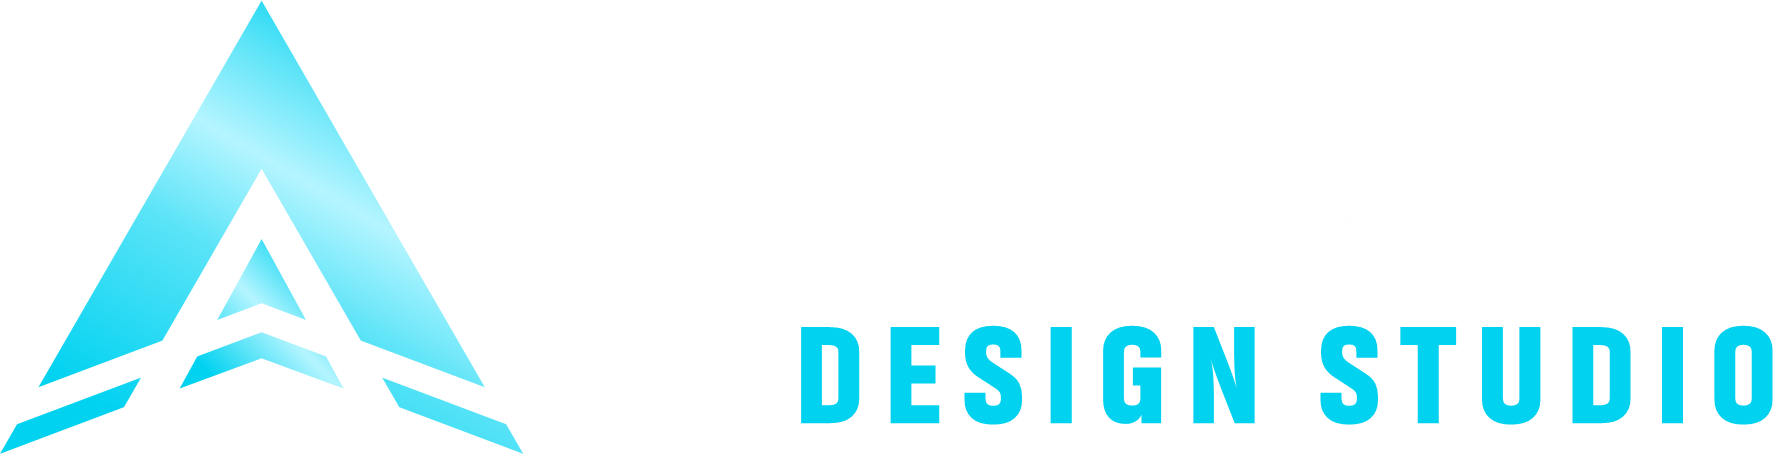 Apollo Studio Design logója